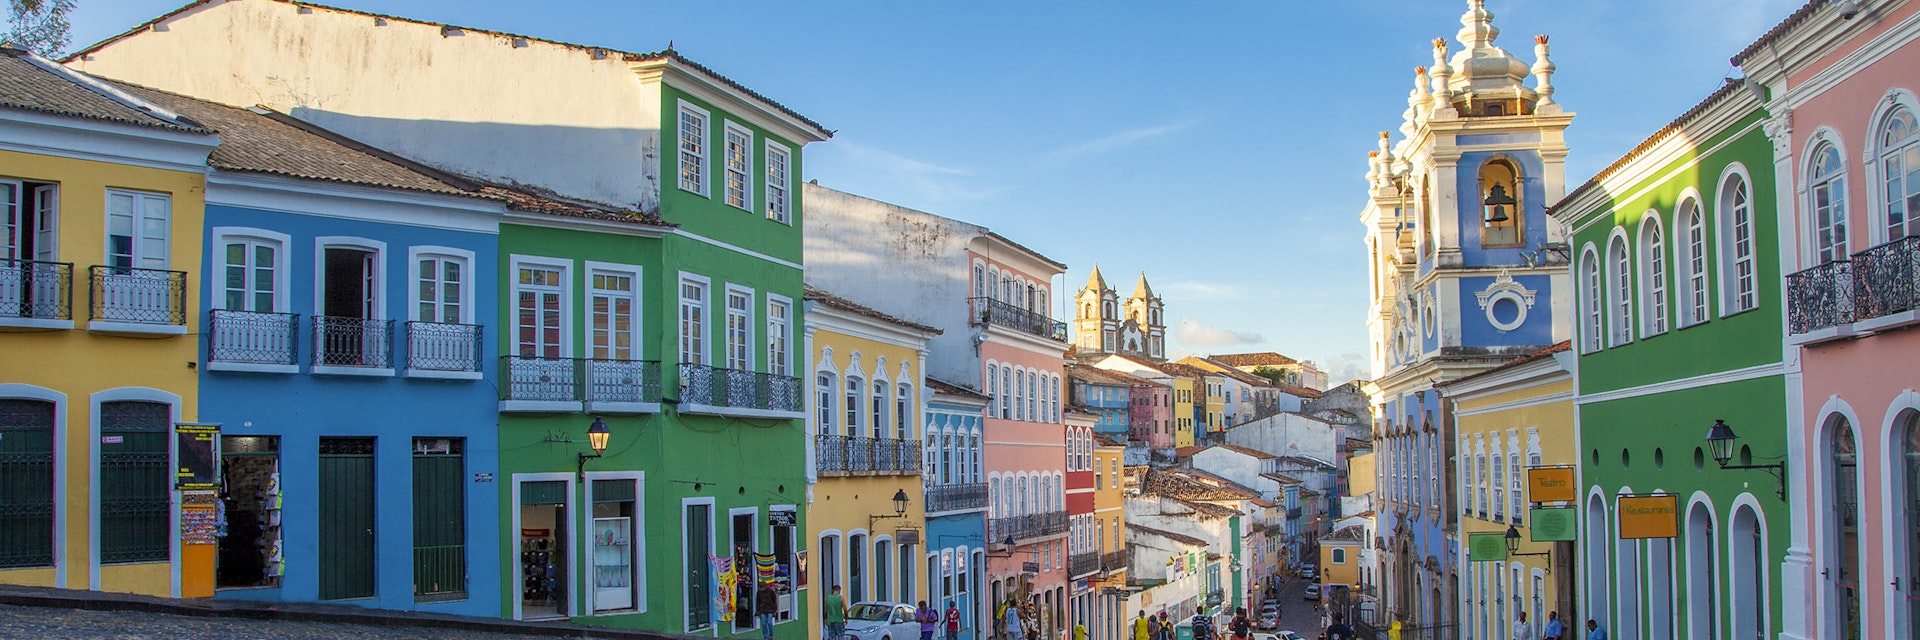 Historical part of the city Pelourinho, Salvador the capitol of State of Bahia. 